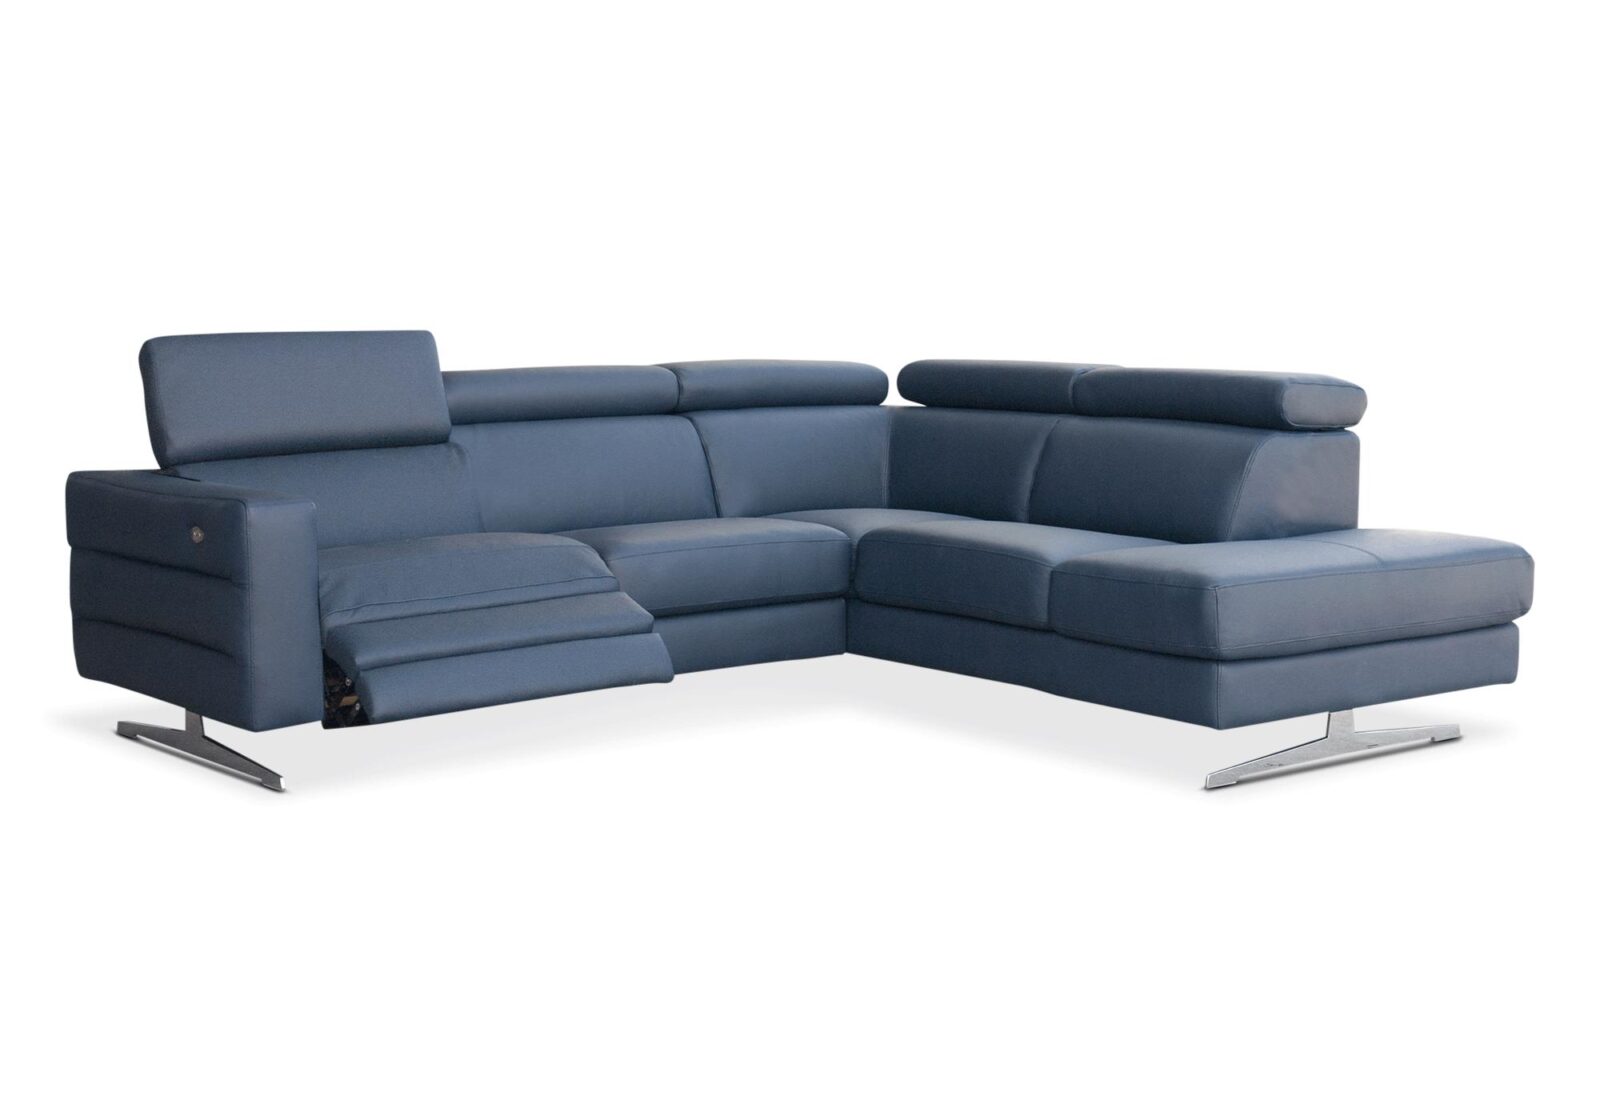 Ecksofa Urus mit 3er Sofa und 2er Sofa. Bezug: Leder. Farbe: Blau. Erhältlich bei Möbel Gallati.